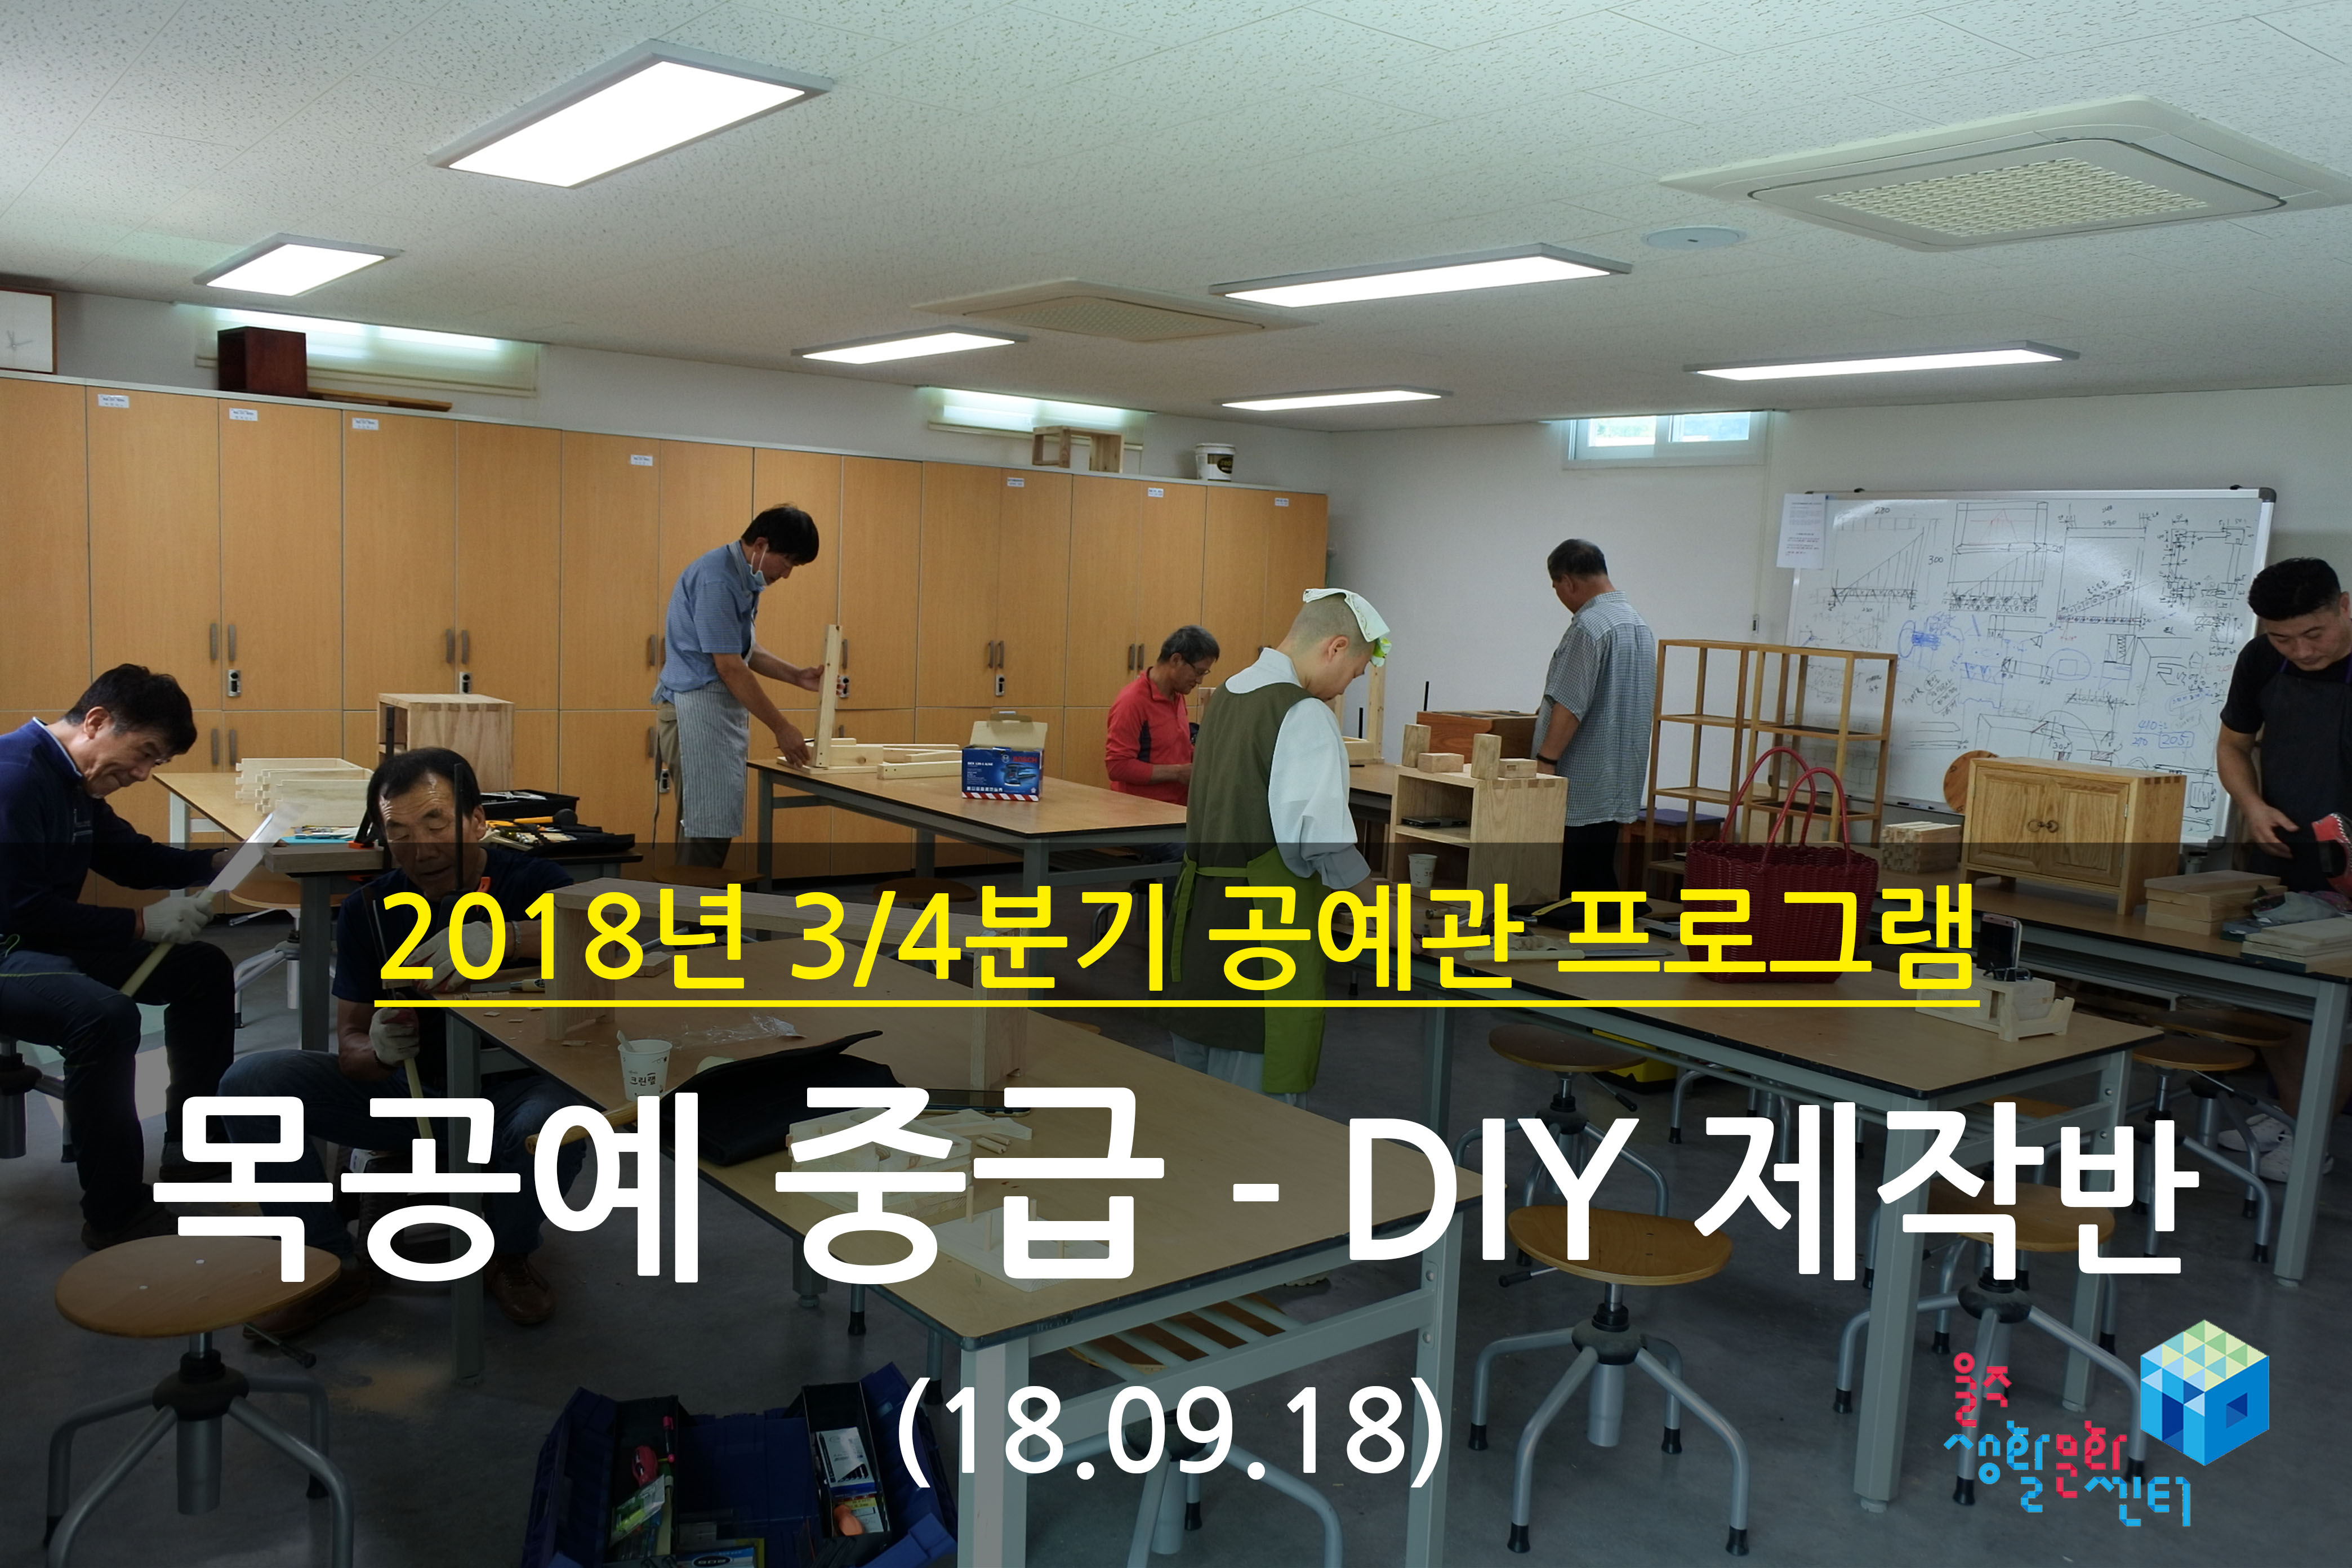 2018.09.18 _ 목공예 중급 - DIY 제작반 _ 3/4분기 12주차 수업